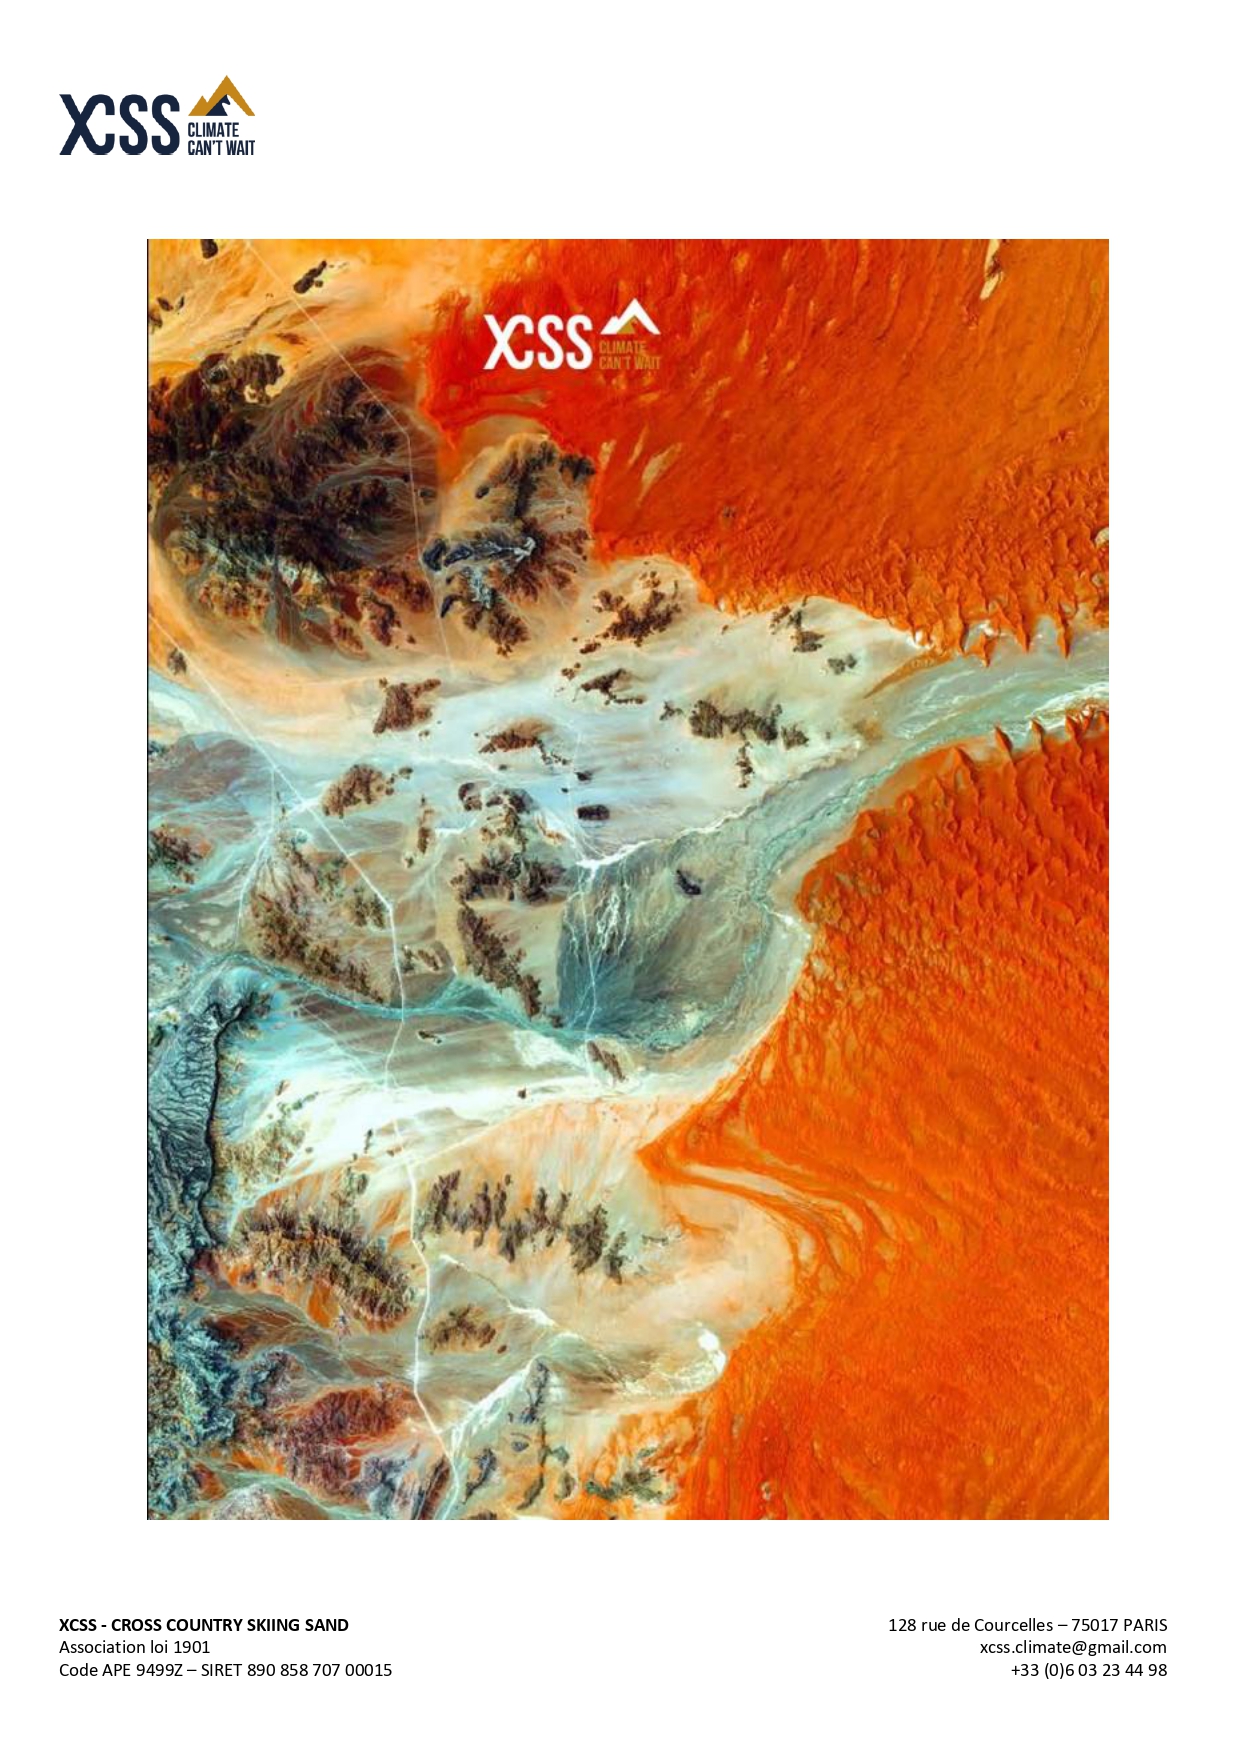 XCSS — CROSS COUNTRY SKIING SAND (Париж, Франция) компаниясының президенті Эстель Пейен Әл-Фараби атындағы ҚазҰУ ұжымына алғысын білдірді